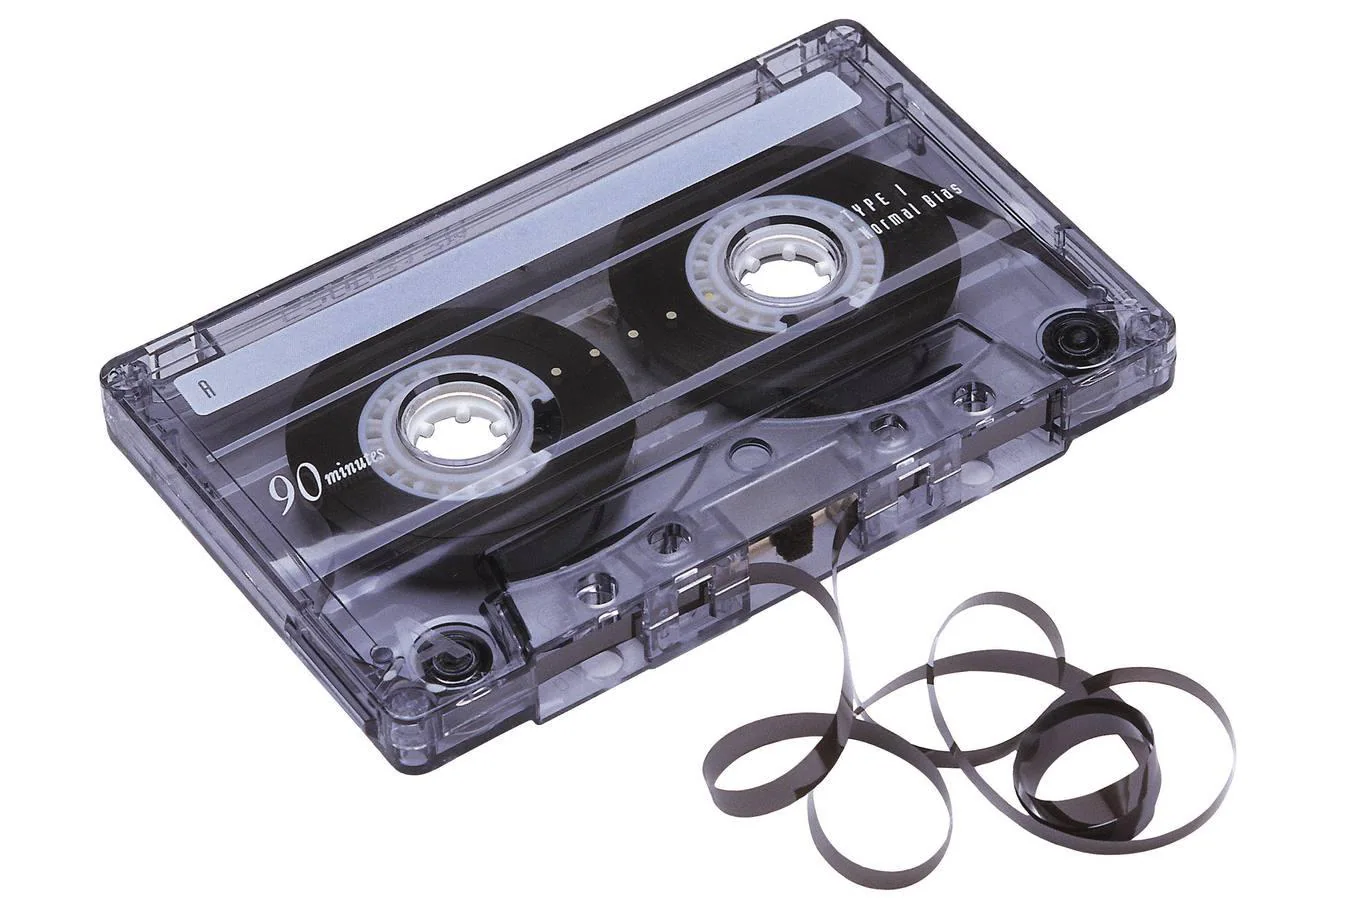 Las cintas de casete. Este objeto nació en 1963 de manos del inventor alemán Lou Ottens para la compañía Phillips y era capaz de grabar y reproducir a través de cinta magnética. Se convirtió en una alternativa al disco de vinilo por su durabilidad y facilidad para el traslado y sobre todo porque la música era regrabable. En los 80 vivió su época de oro hasta la llegada del disco compacto.